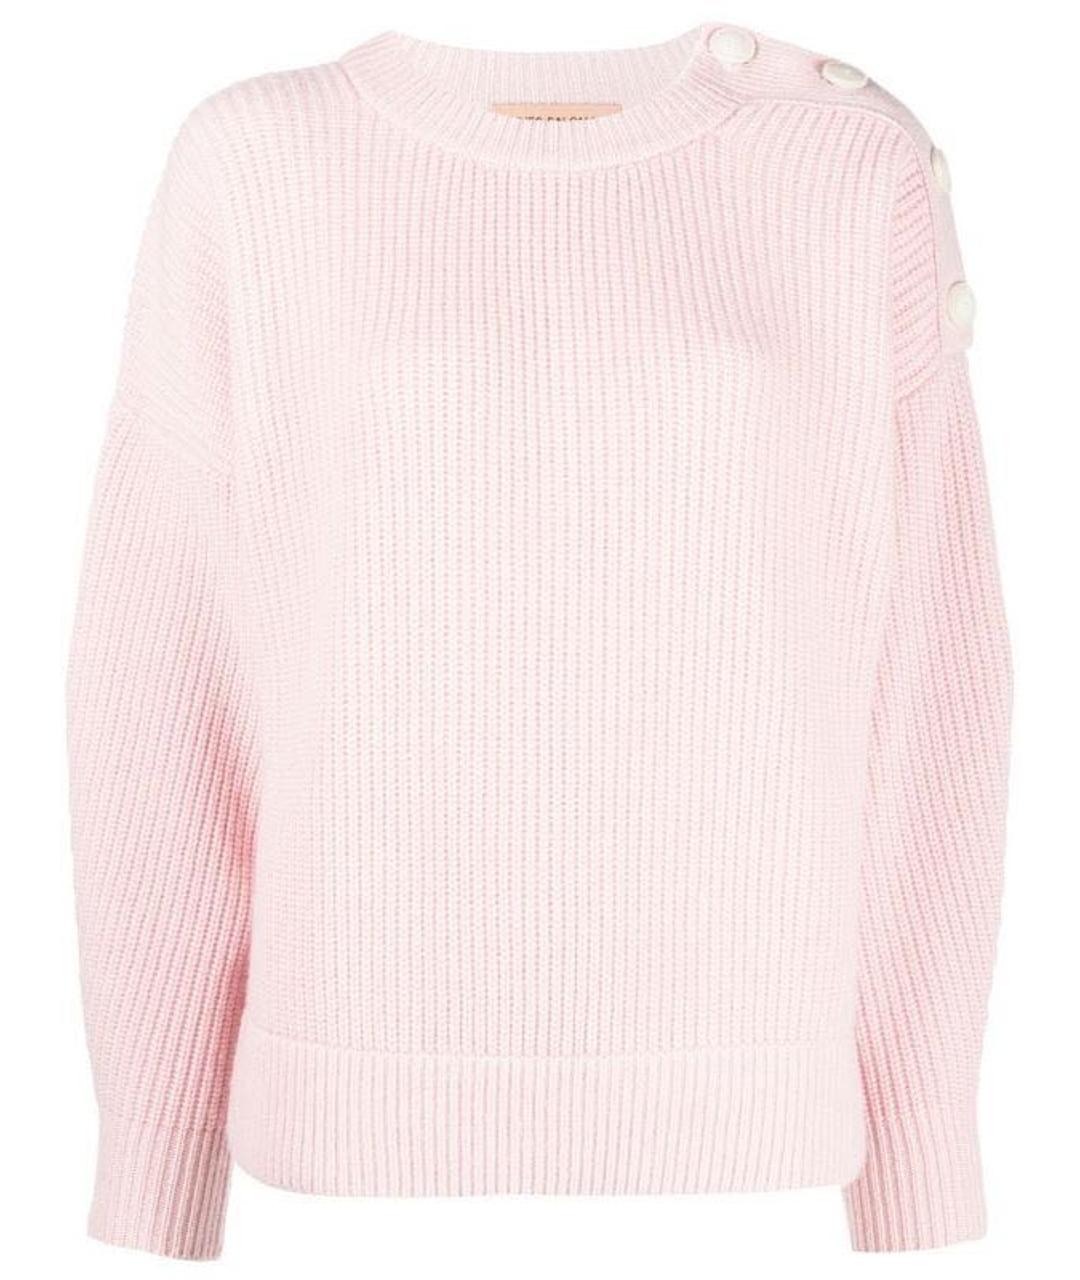 YVES SALOMON Розовый кашемировый джемпер / свитер, фото 1